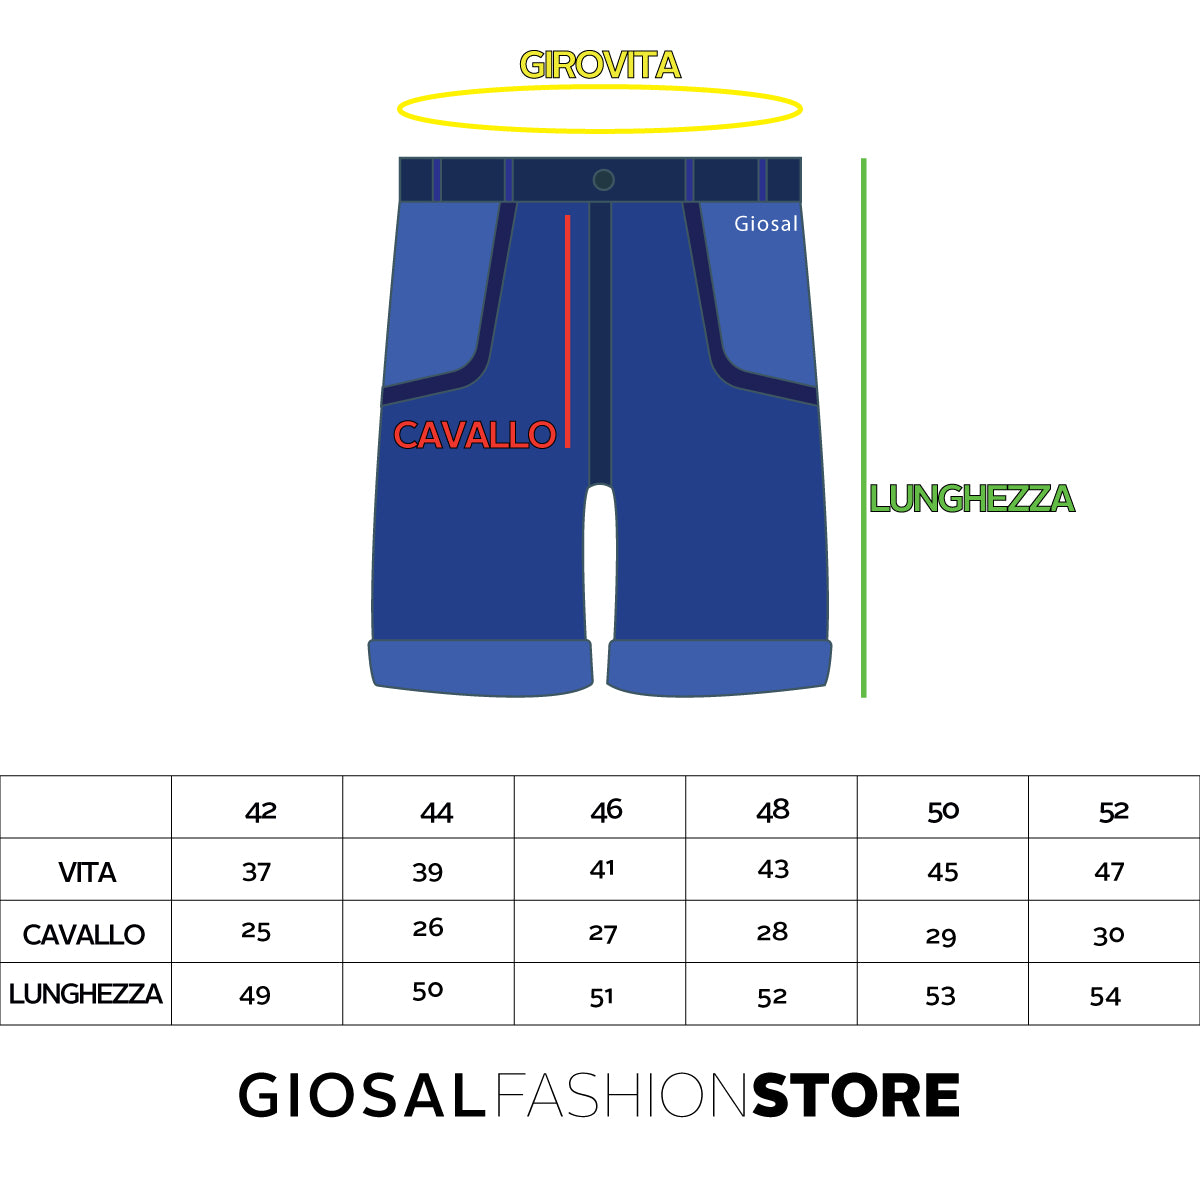 Bermuda Pantaloncino Jeans Uomo Denim Riga Laterale Slim Cinque Tasche GIOSAL-PC1336A